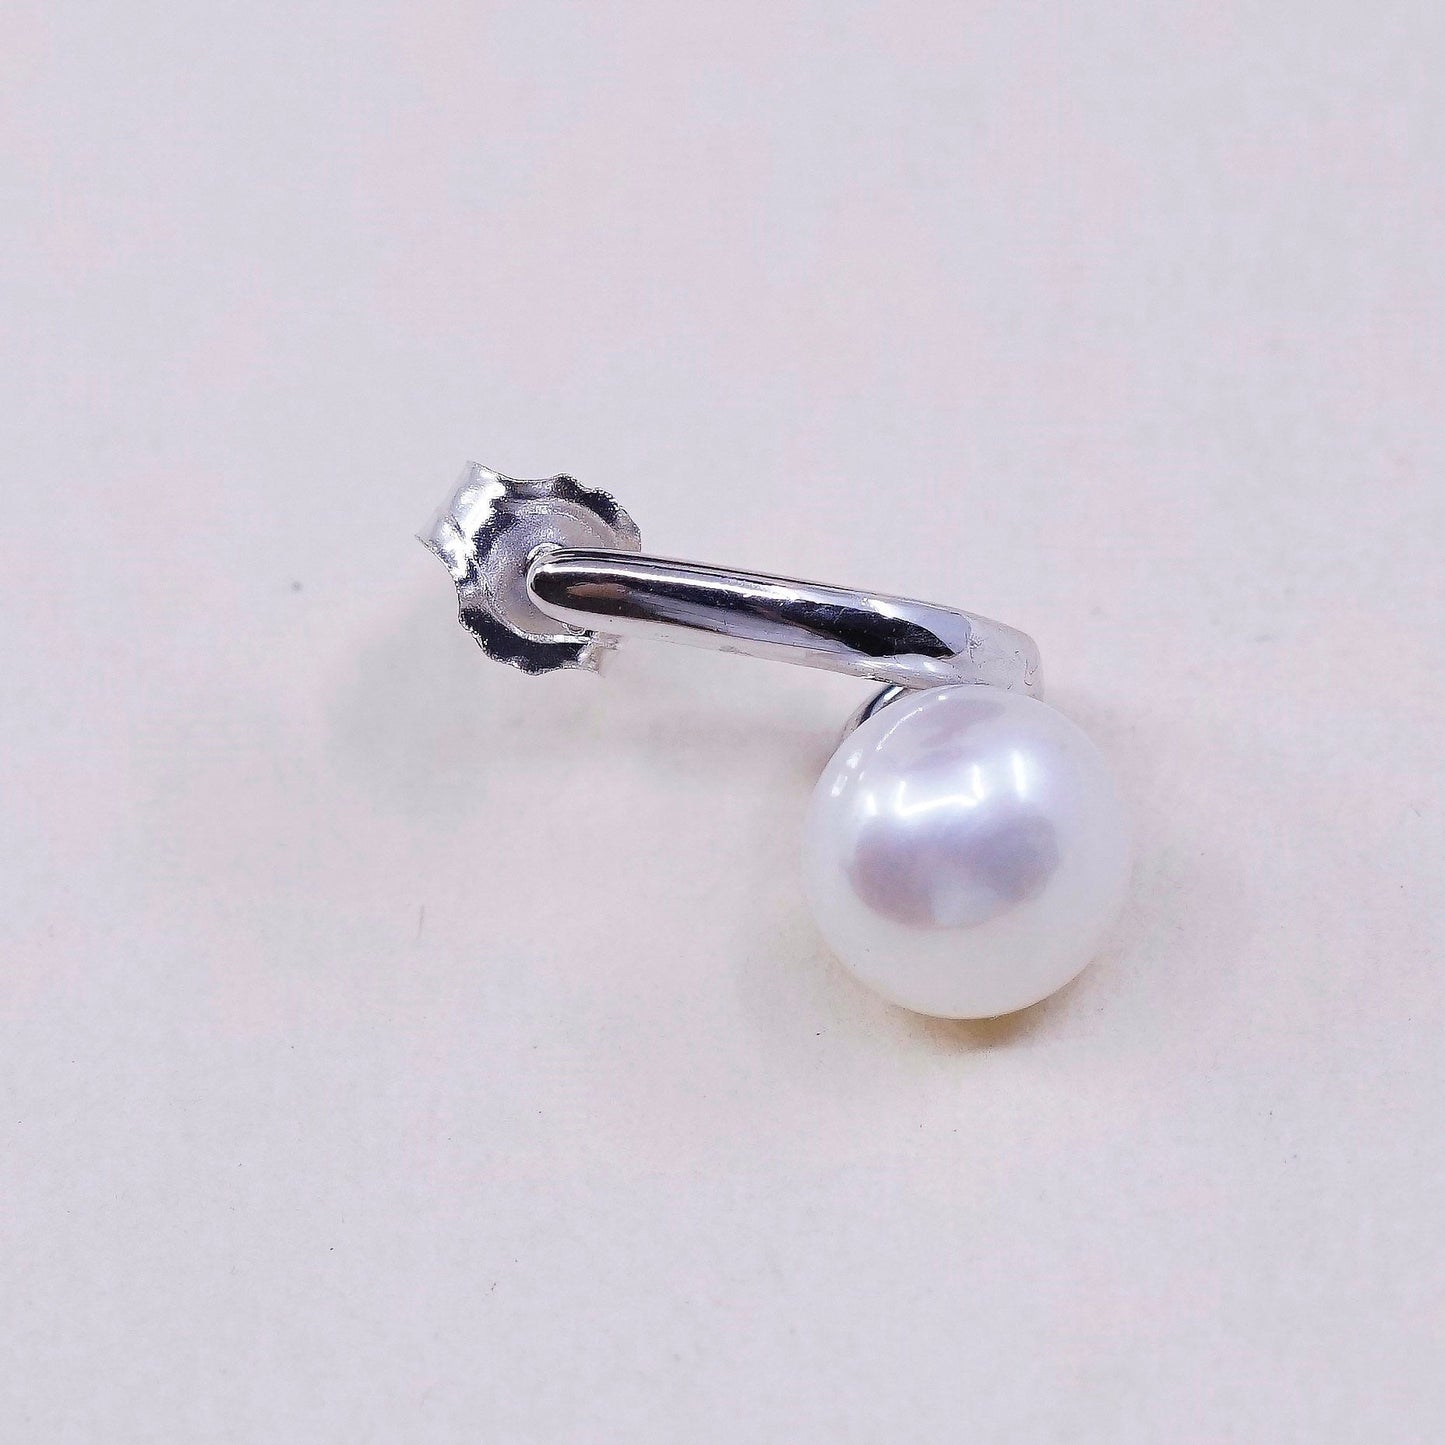 Vintage handmade sterling silver freshwater pearl earrings, 925 studs